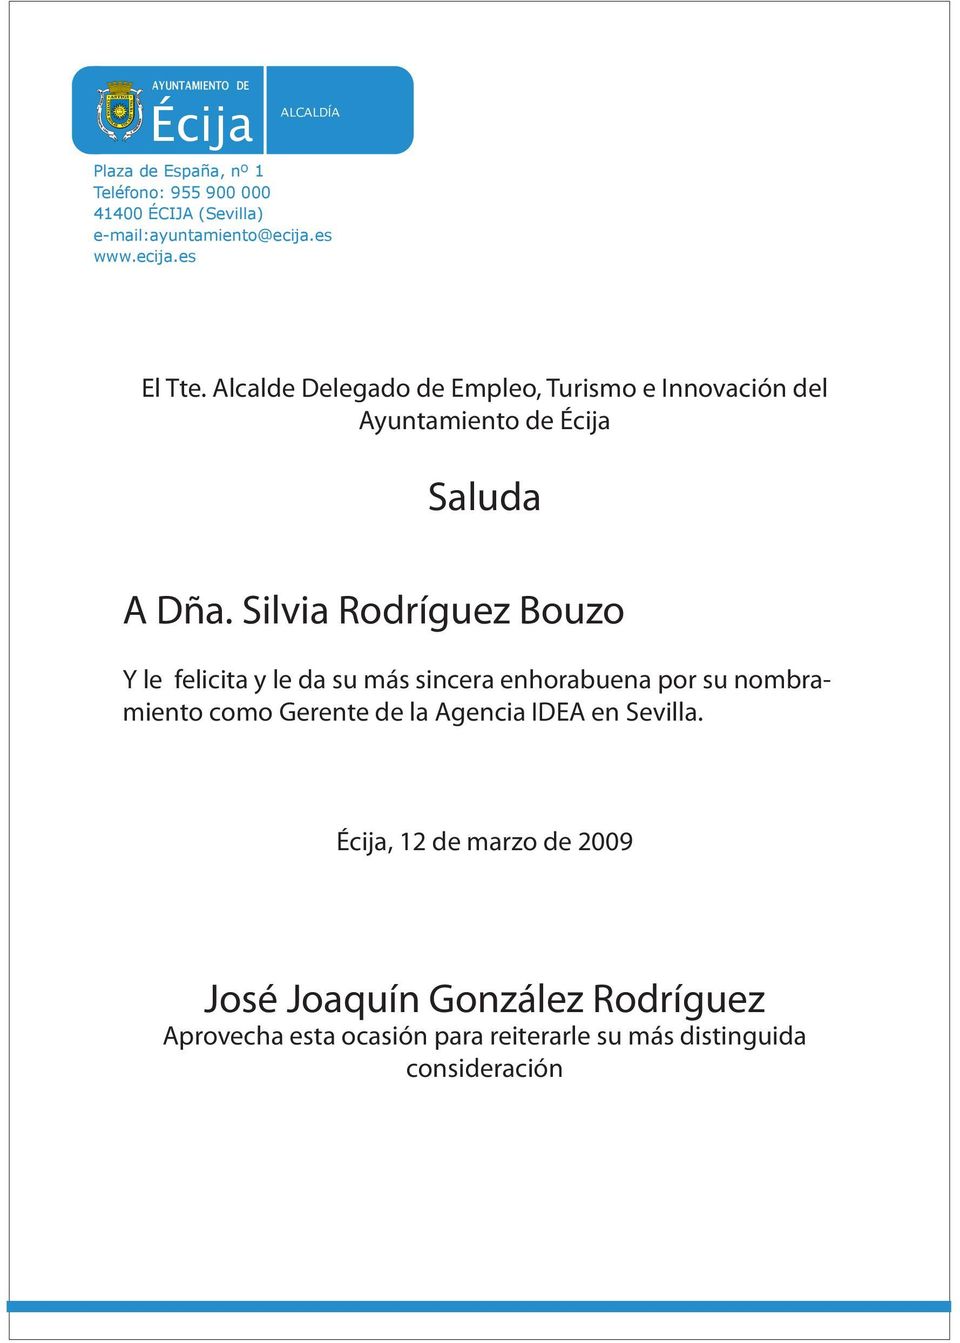 Silvia Rodríguez Bouzo Y le felicita y le da su más sincera enhorabuena por su nombramiento como Gerente de la